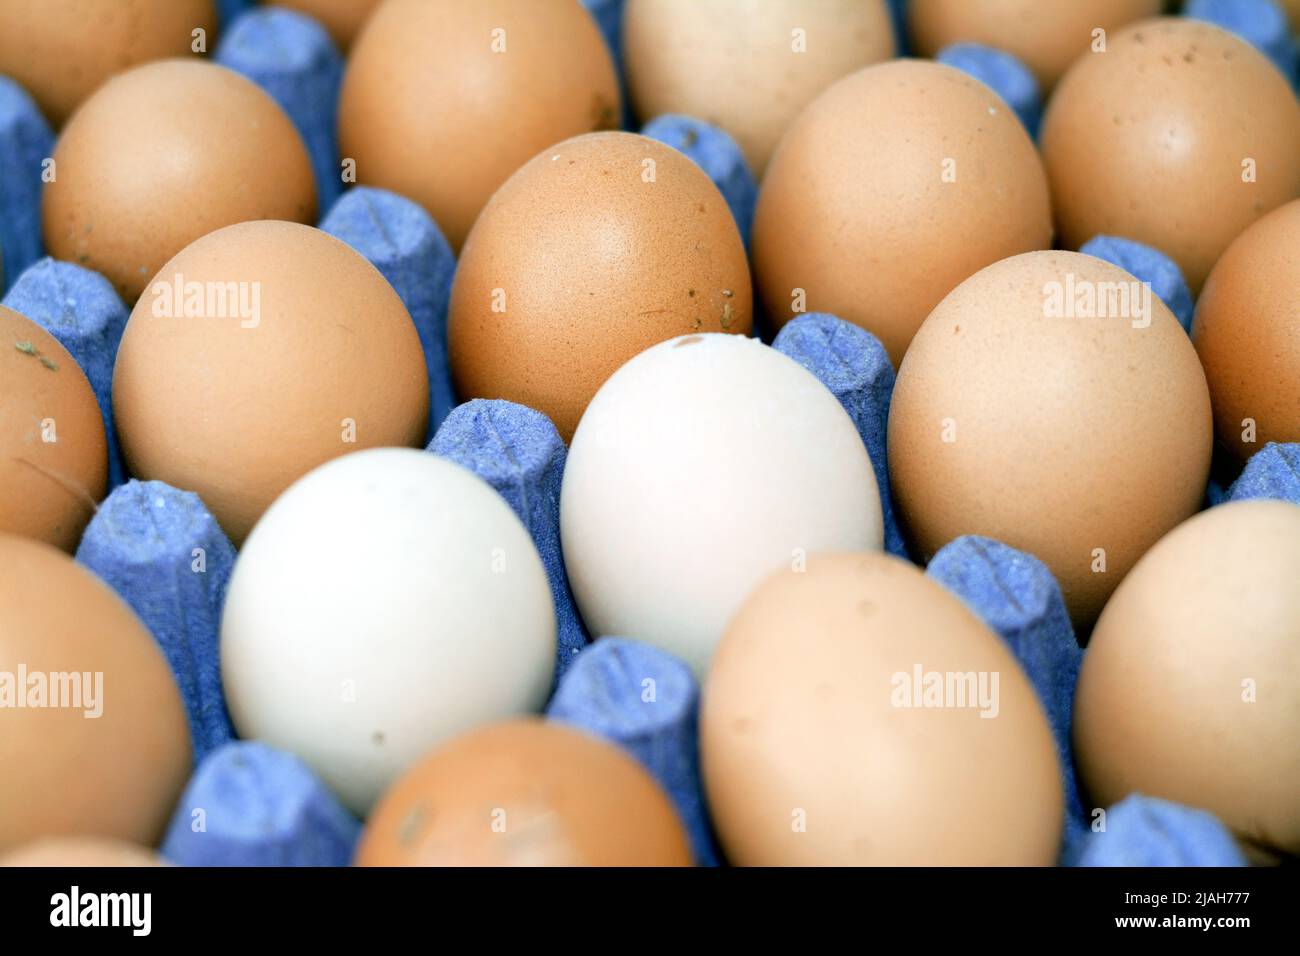 Enfoque selectivo de huevos de pollo marrón orgánico que contiene muchos  nutrientes que es esencial para el cuerpo humano en una caja de cartón de  huevo llena, un grupo Fotografía de stock -